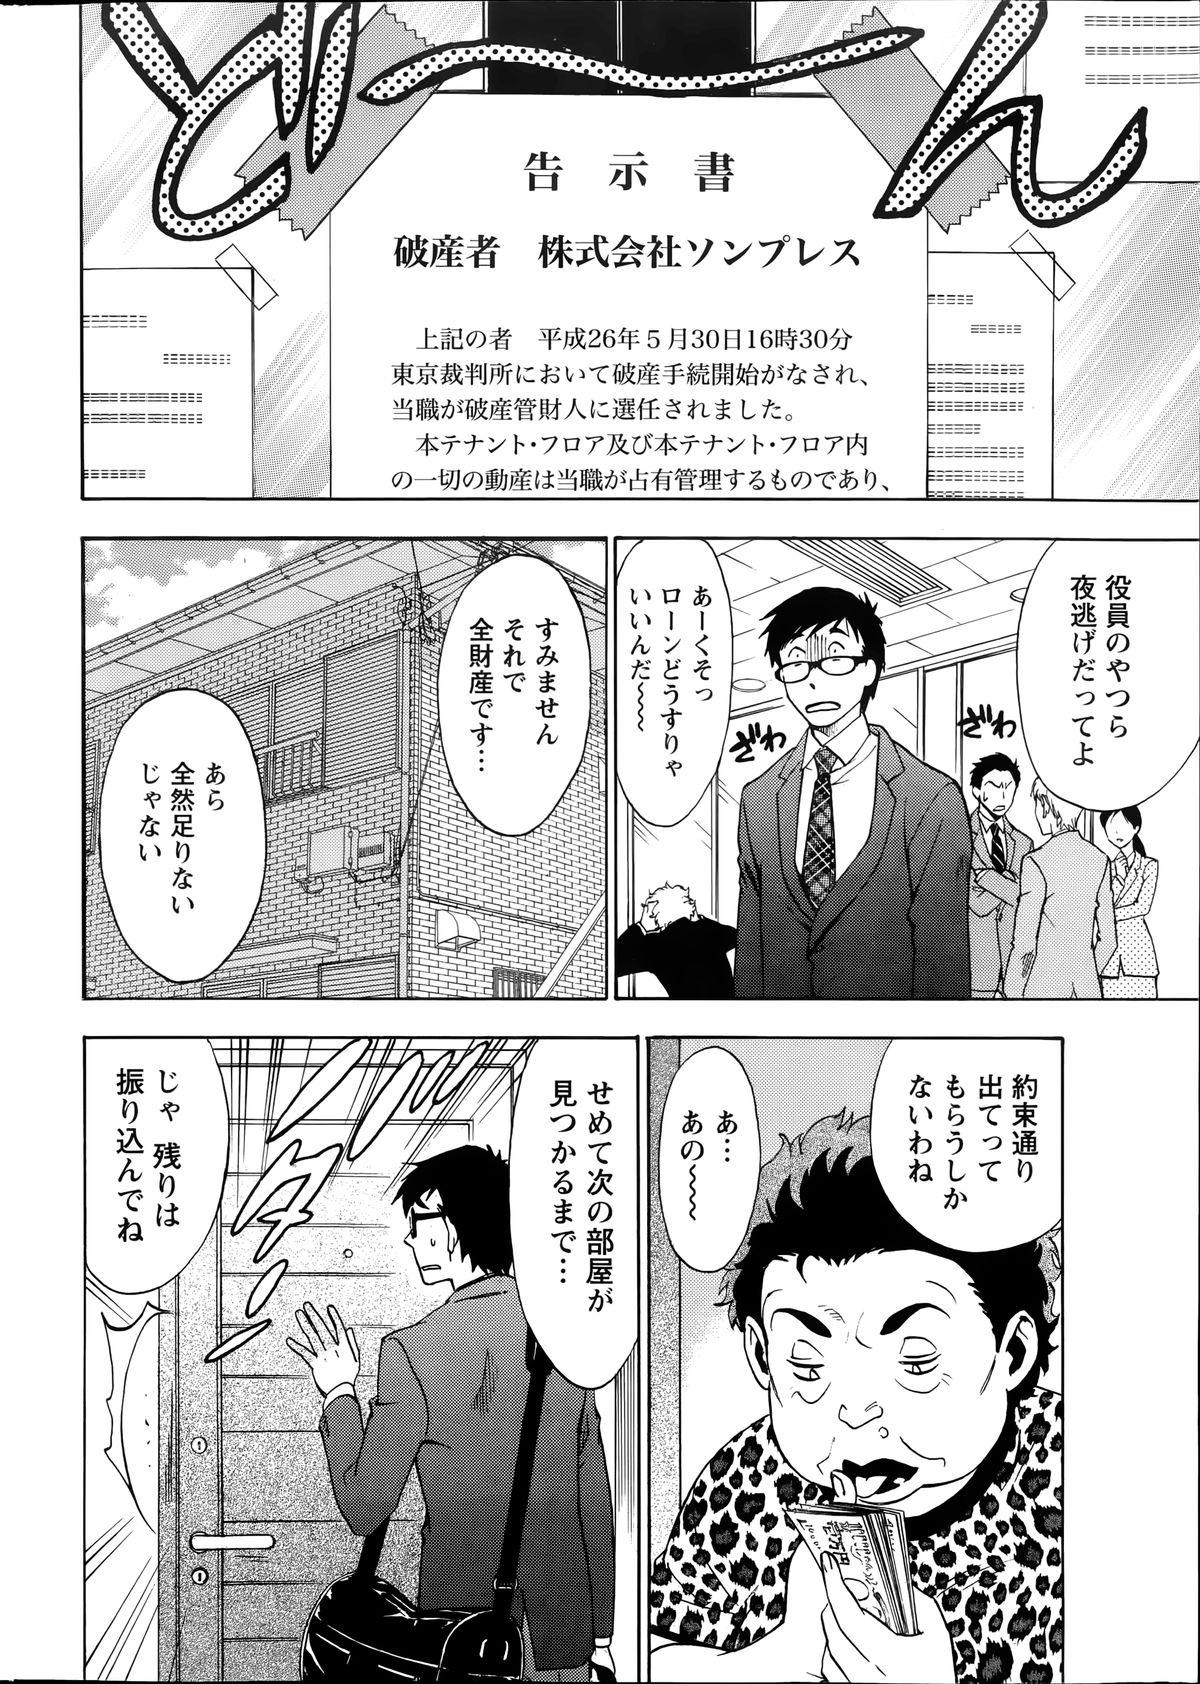 [Sawada Furope] Nise kon! - Spectacular Happy Sham Marriage! Ch.1-6 5